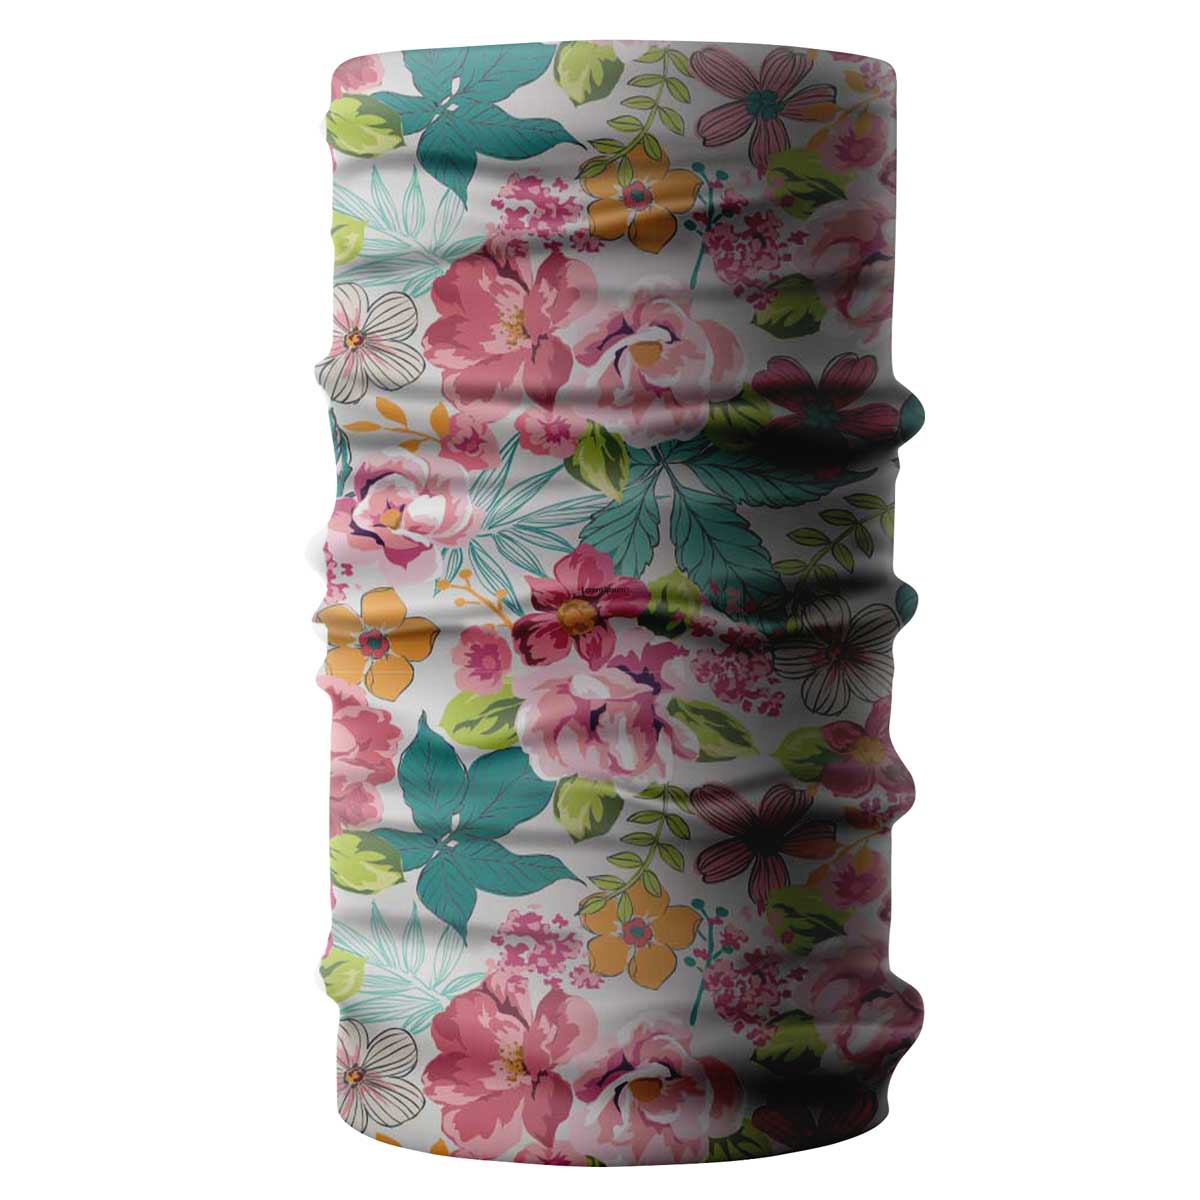 Rustic floral pattern bandana, buff- liratech.eu